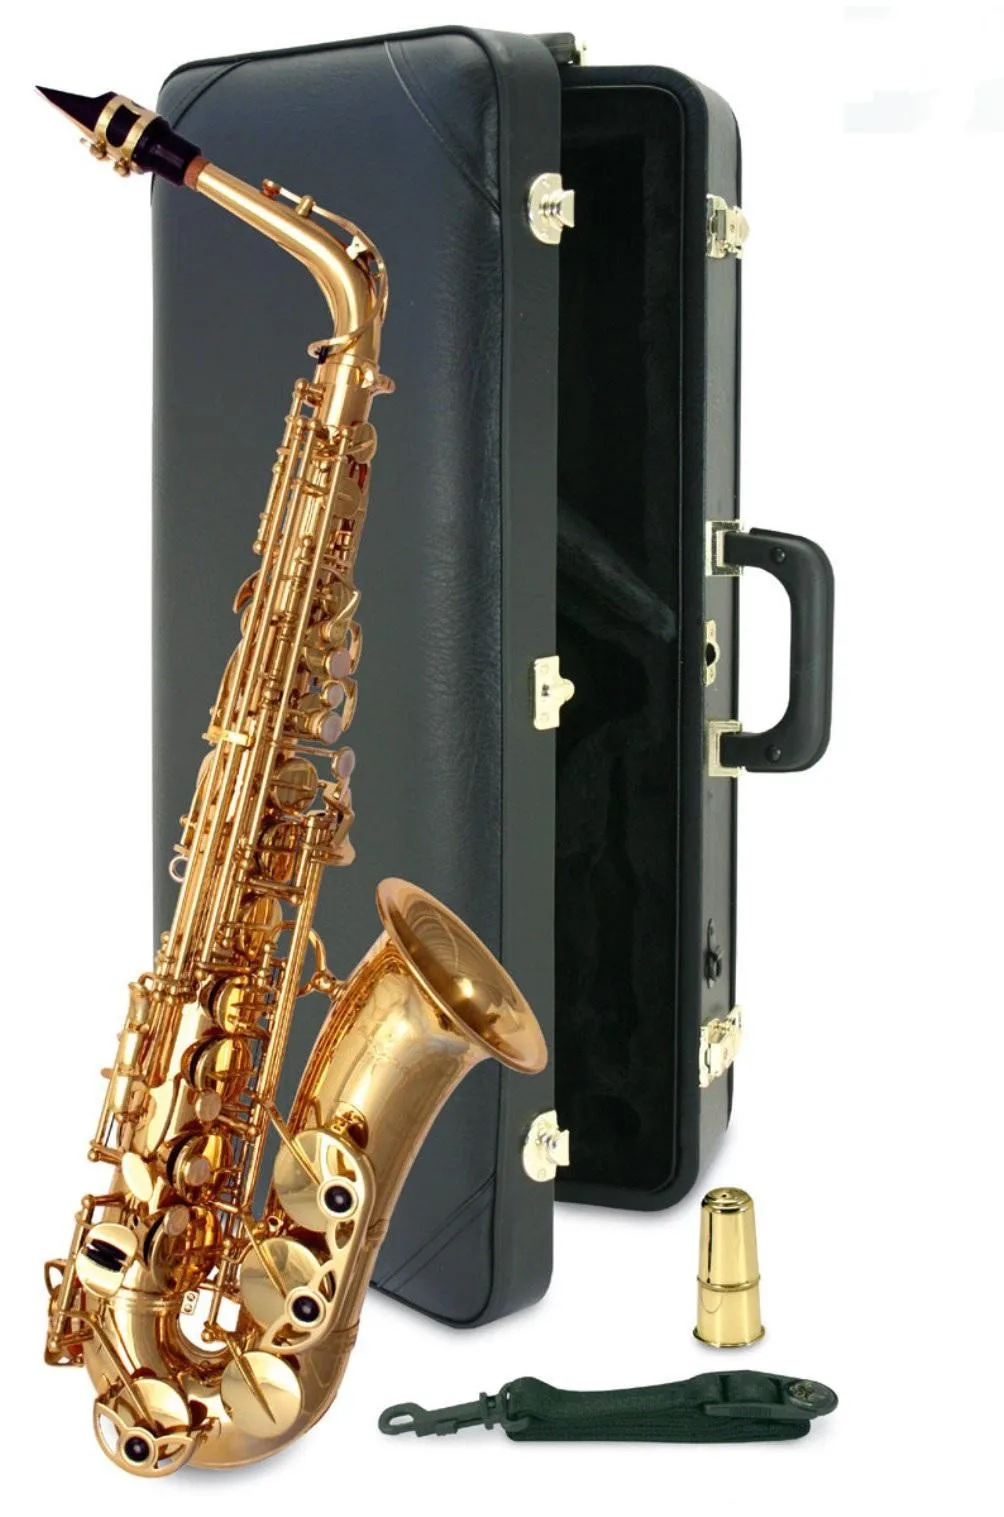 Kaluolin альт саксофон E плоский альт саксофон супер высокое качество Профессиональный класс Музыкальные инструменты с мундштуком подарок